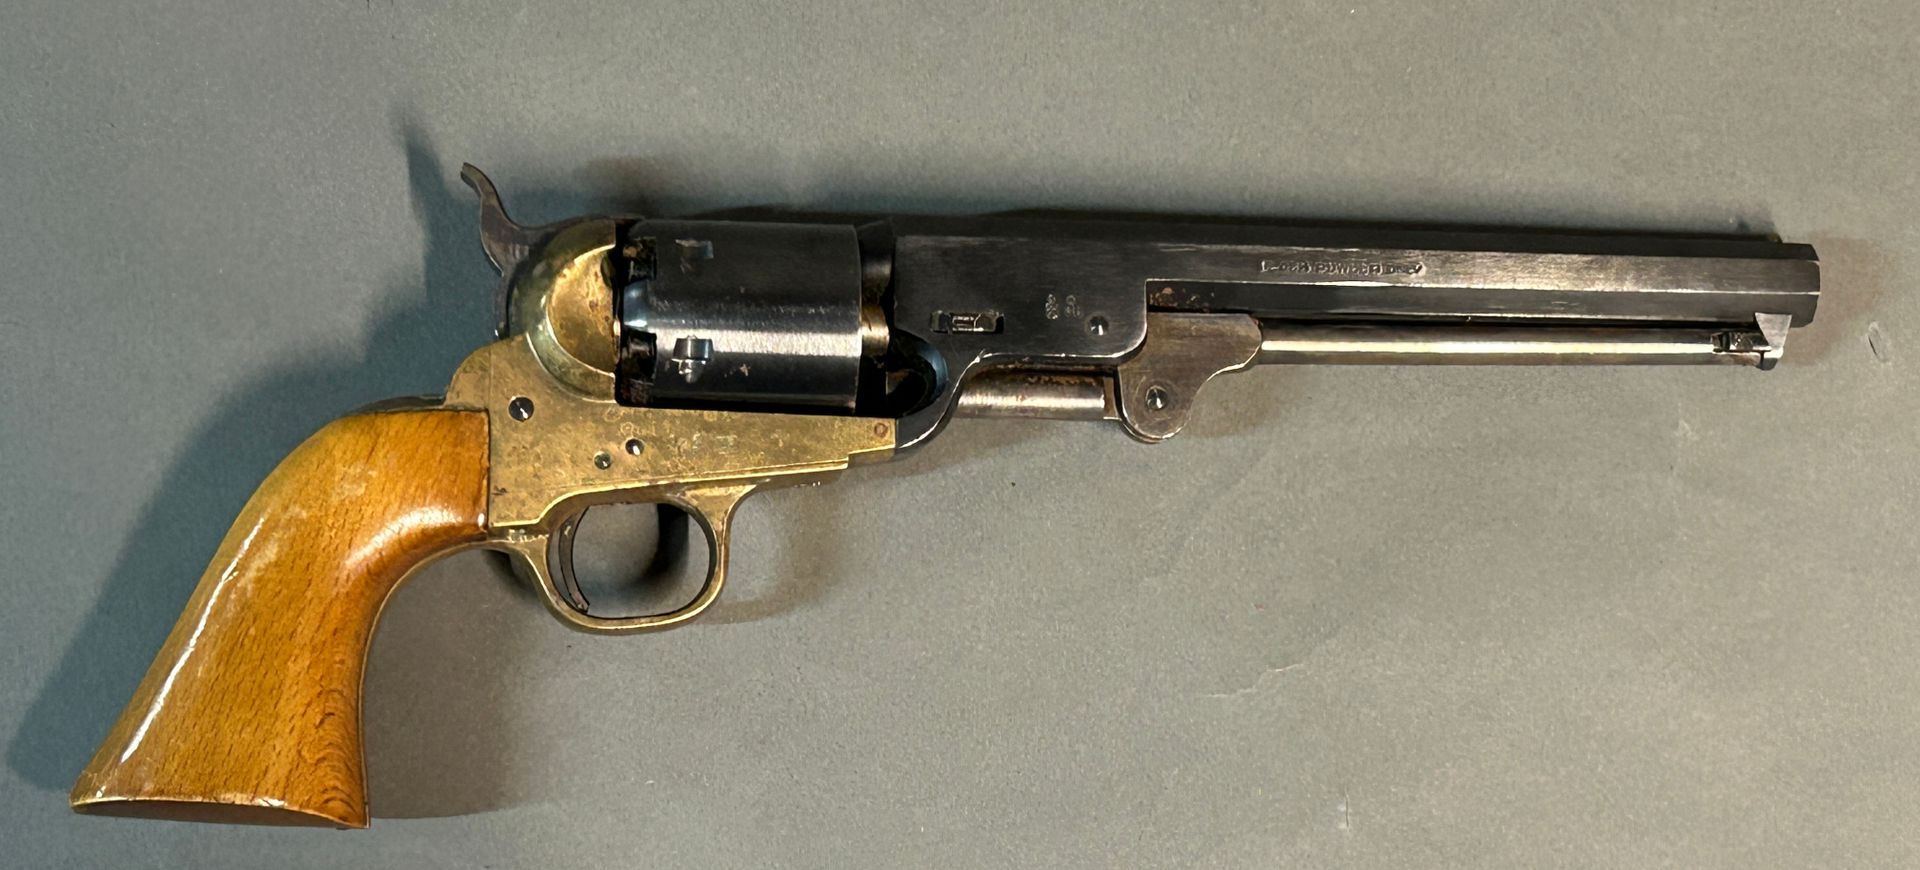 Null ***科尔特海军1851型左轮手枪。

用于黑火药射击的现代制造。

六连发口径36。

八角形枪管上标有 "地址 COL SAM'L Colt, N&hellip;